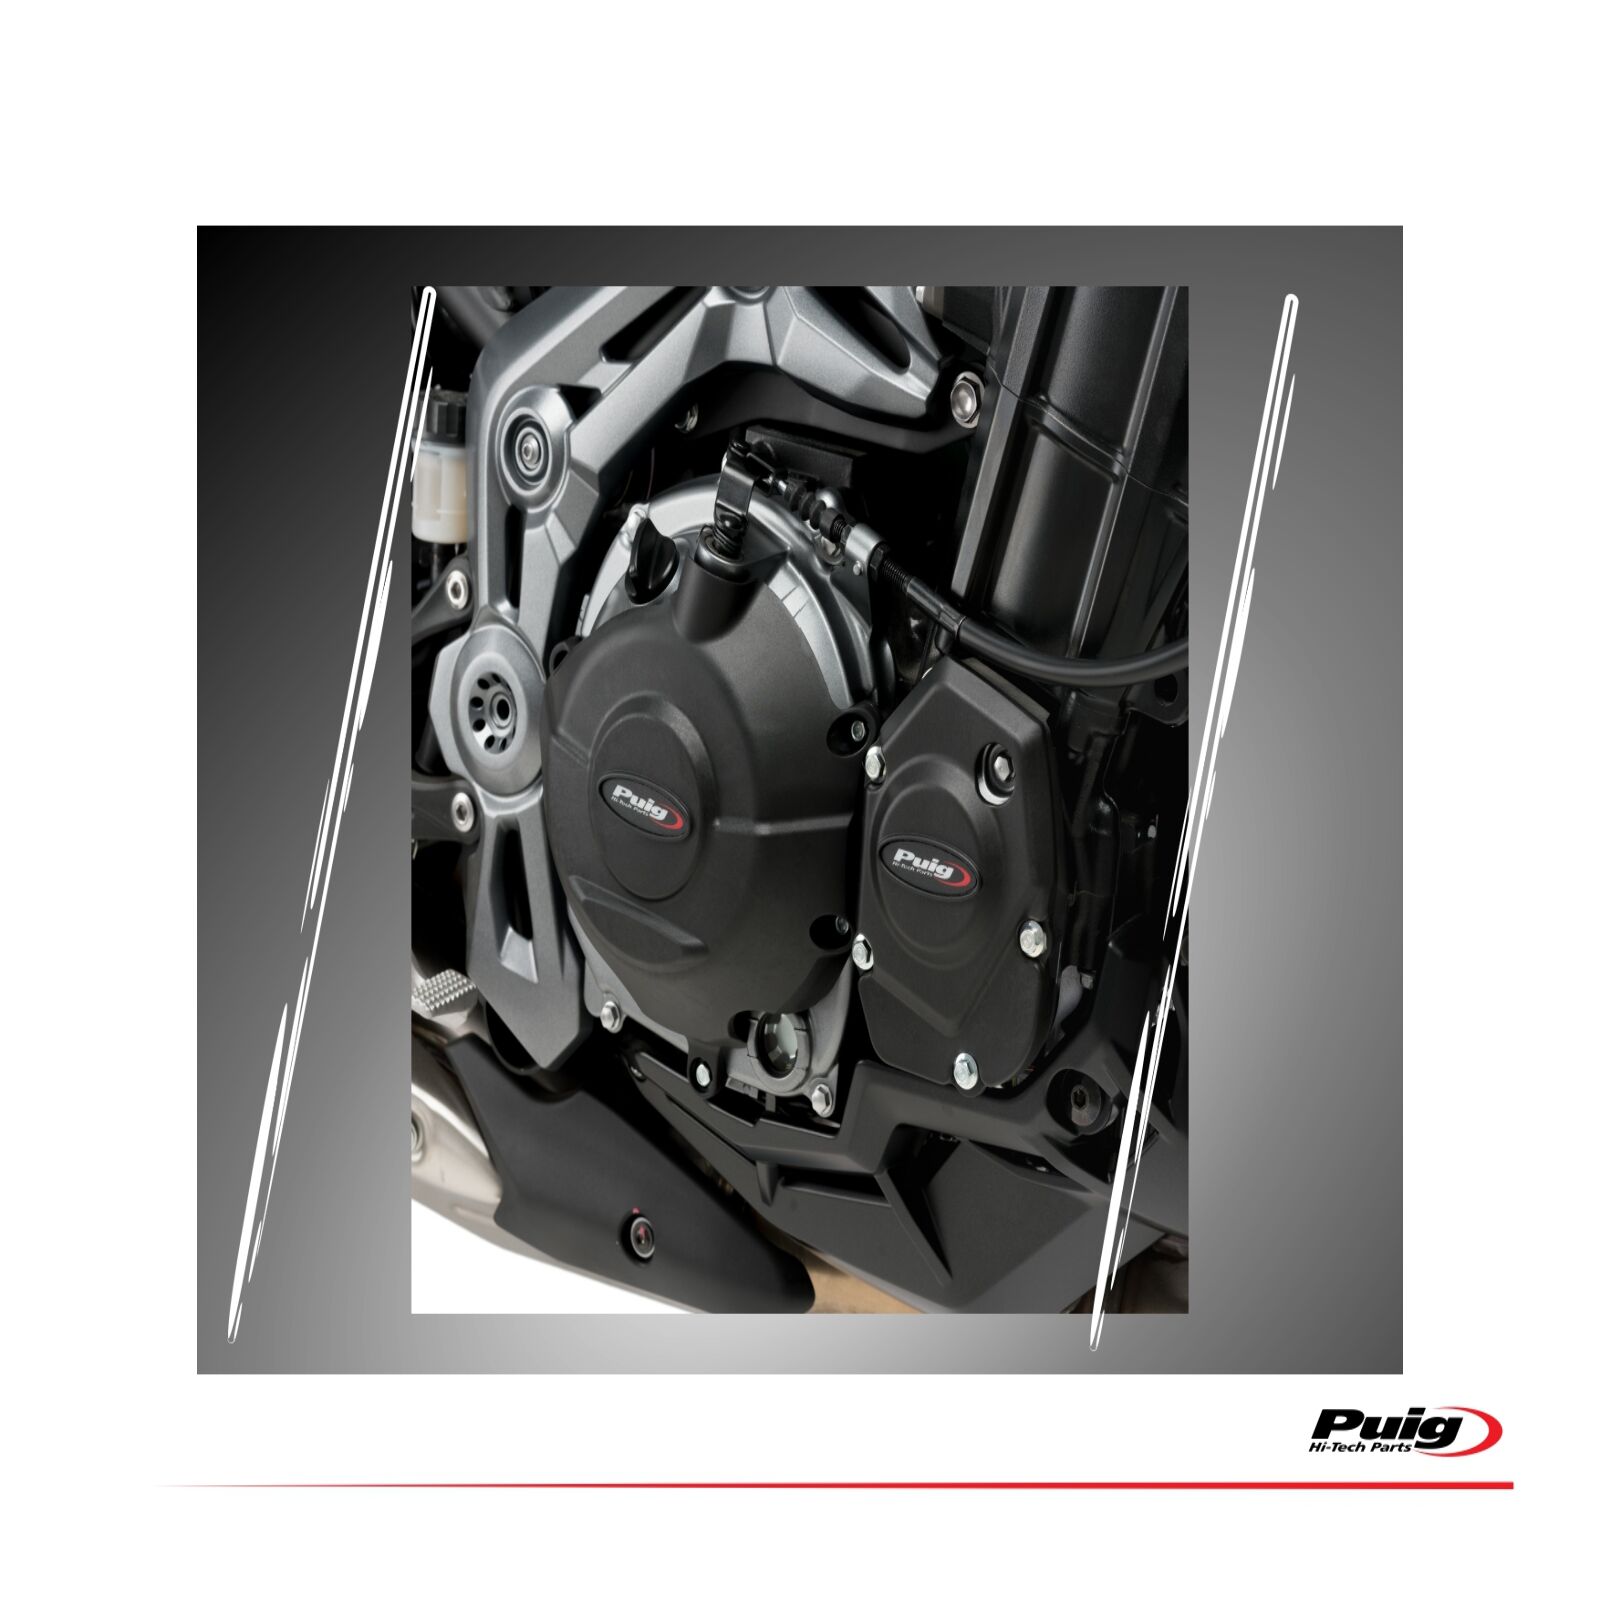 Obrázek produktu Engine protective covers PUIG 20169N černý zahrnuje pravý, levý kryt a kryt alternátoru 20169N